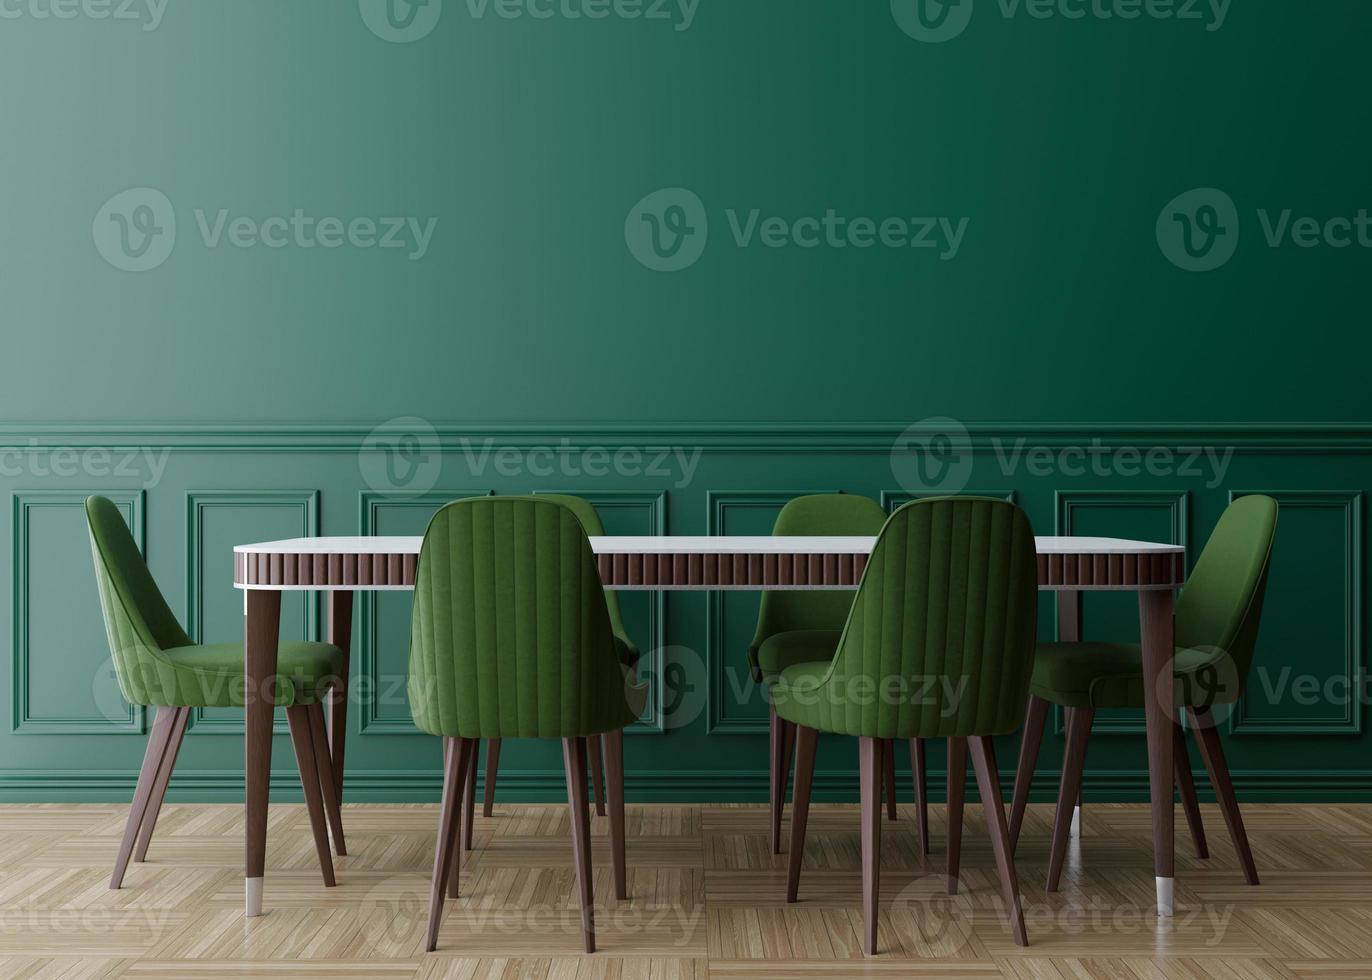 mur vert vide dans la salle à manger moderne. maquette d'intérieur dans un style classique. espace libre, copiez l'espace pour votre image, votre texte ou un autre dessin. table à manger avec chaises vertes, parquet. rendu 3d. photo